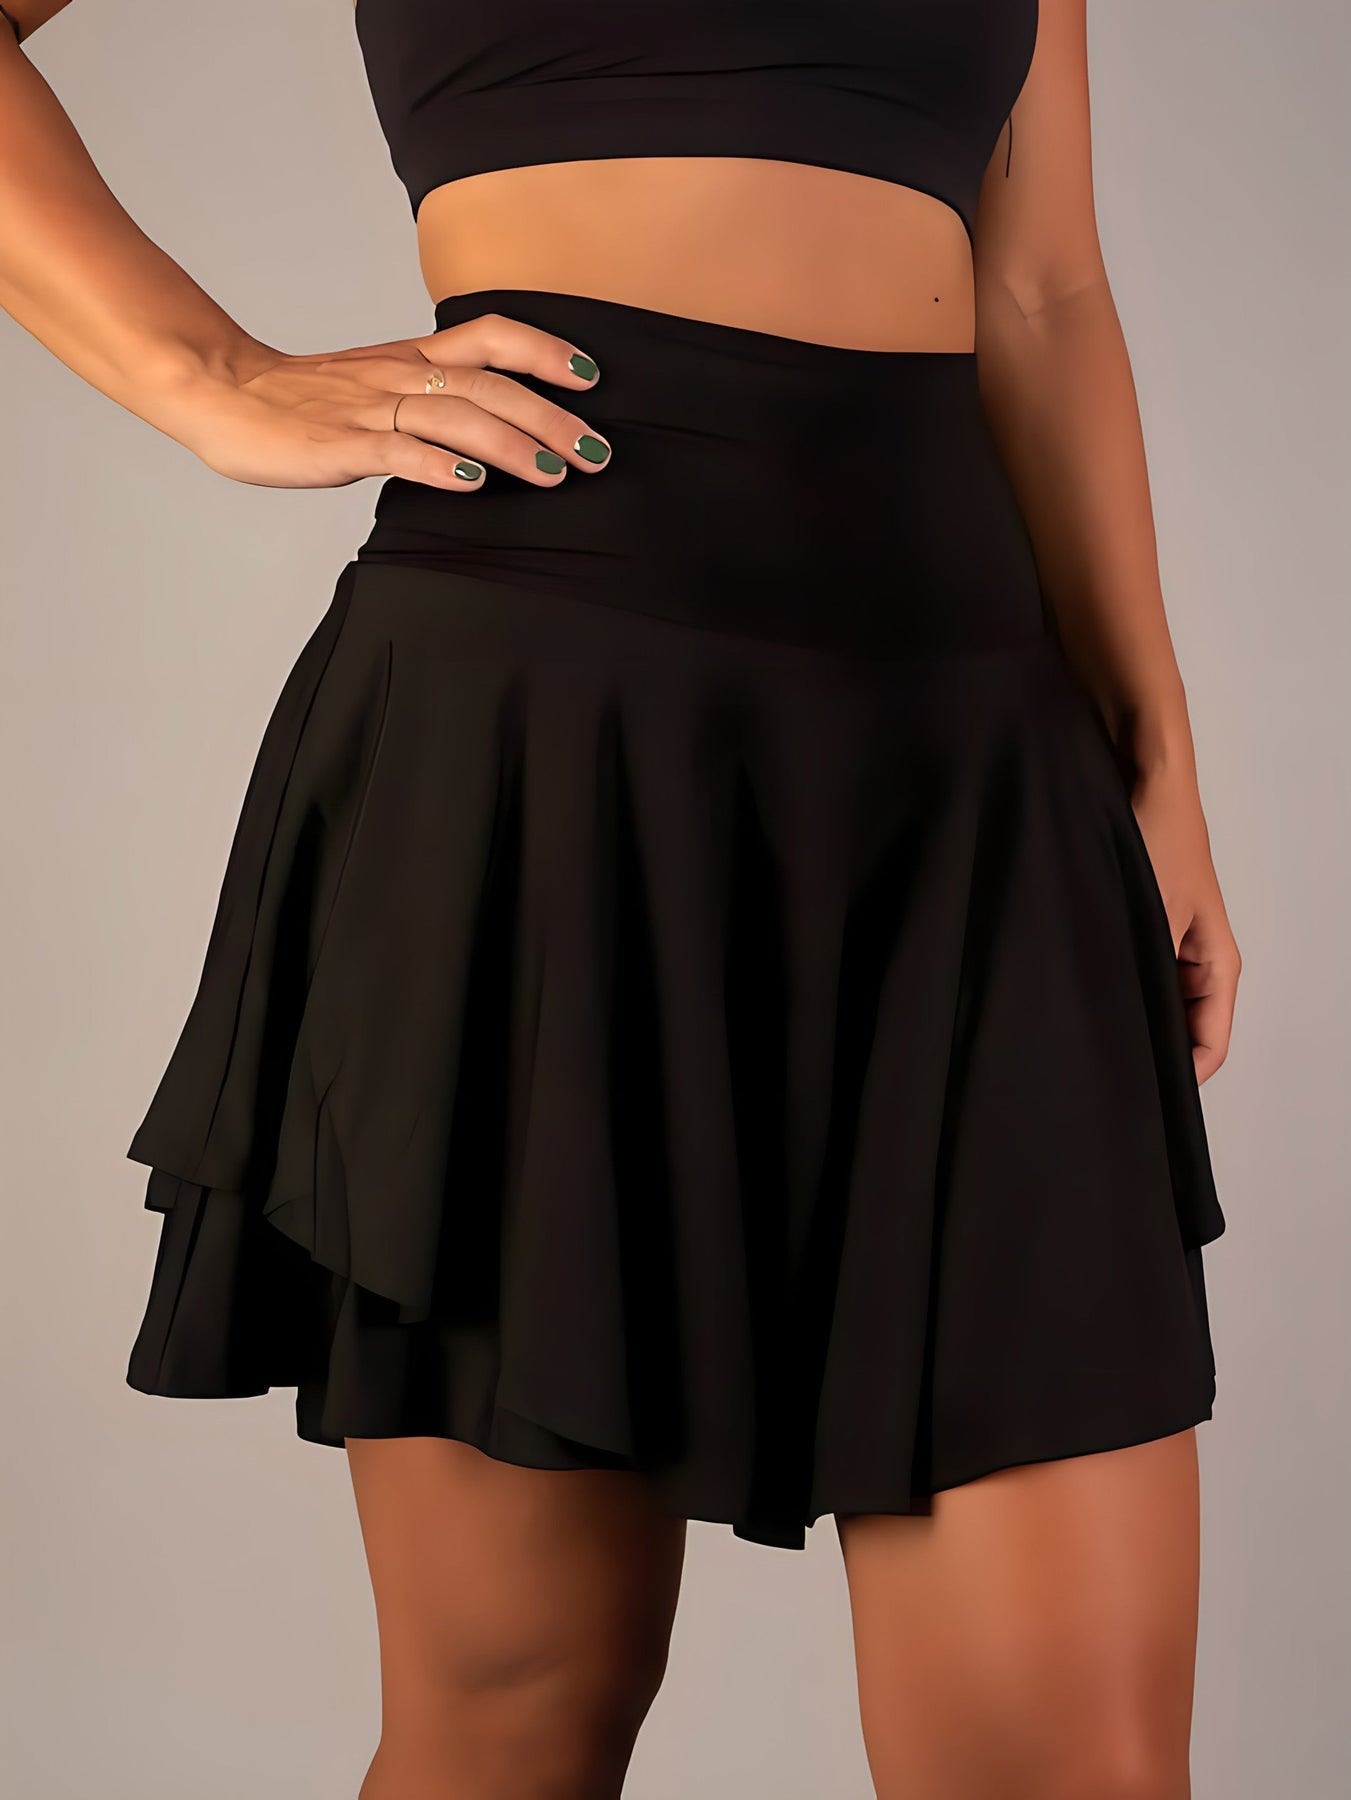 Madée - Stylish Mini Skirt With Shorts